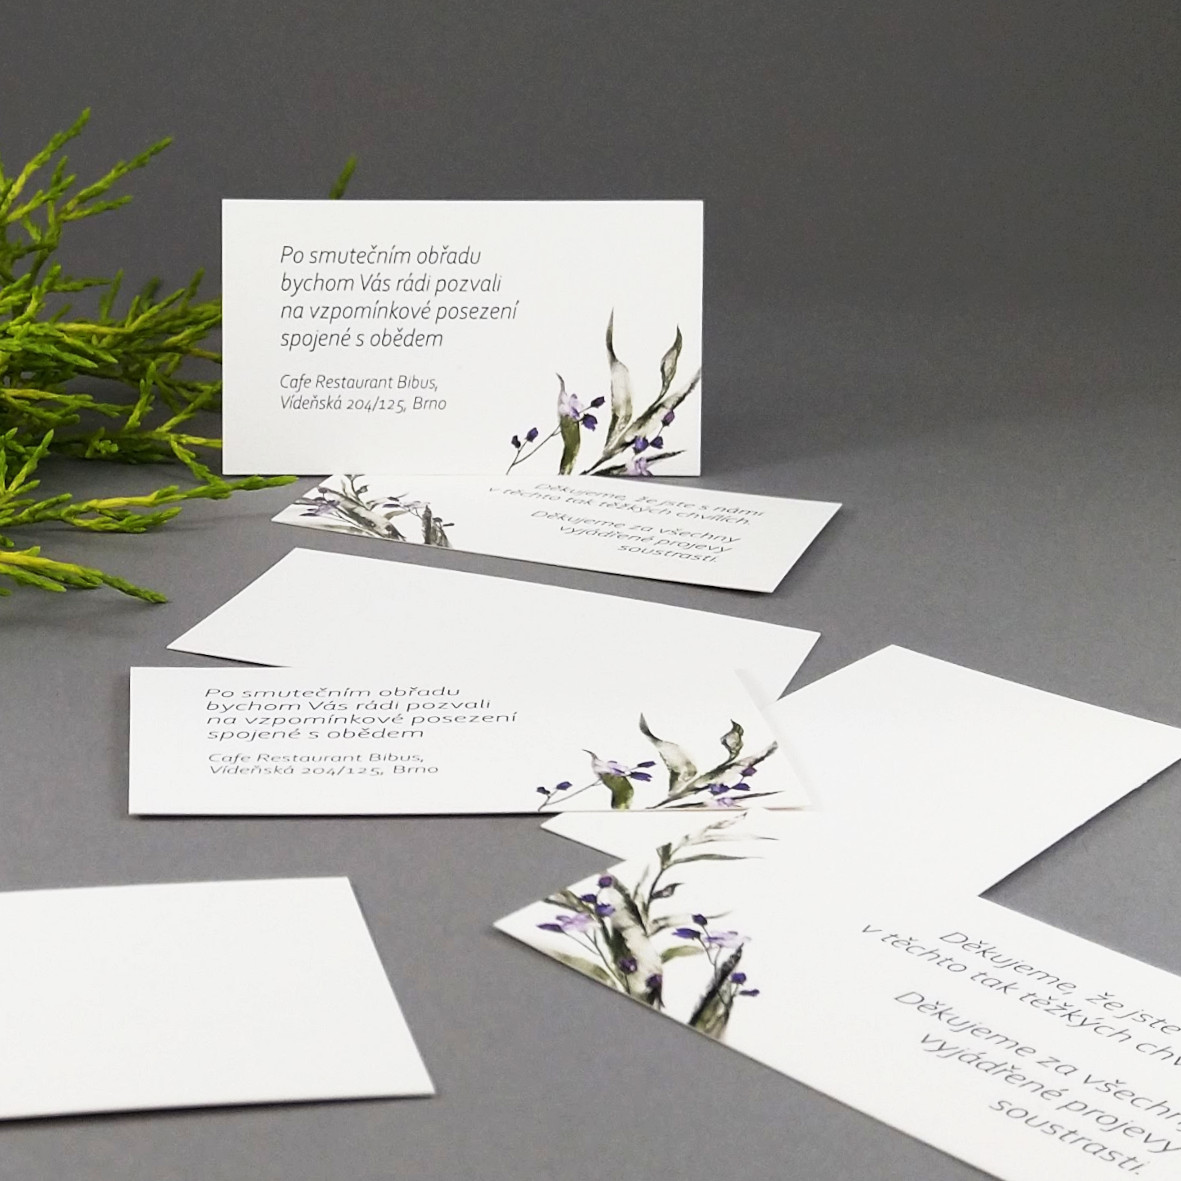 Pozvánka, informační karta – s motivem ratolesti a drobných fialových květů, formát 85 × 55 mm, jednostranná